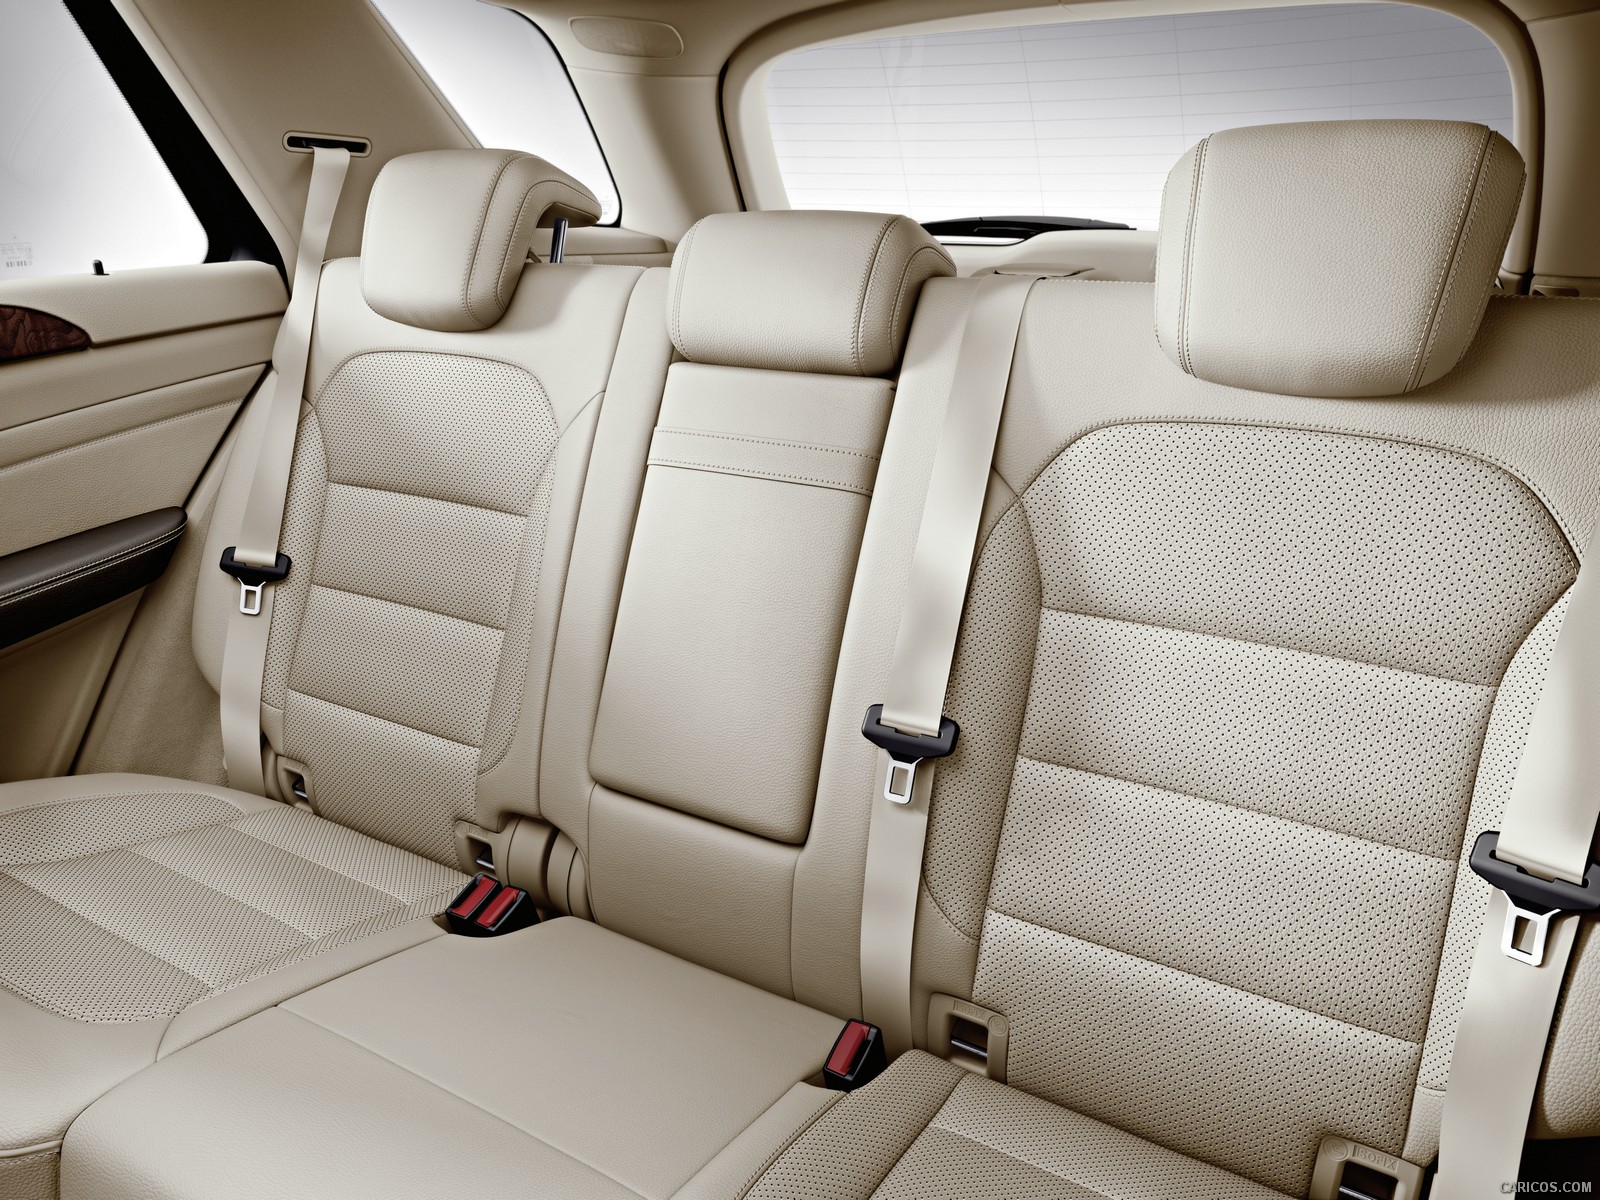 2012 Mercedes-Benz M-Class - Interior Rear Seats, #238 of 320